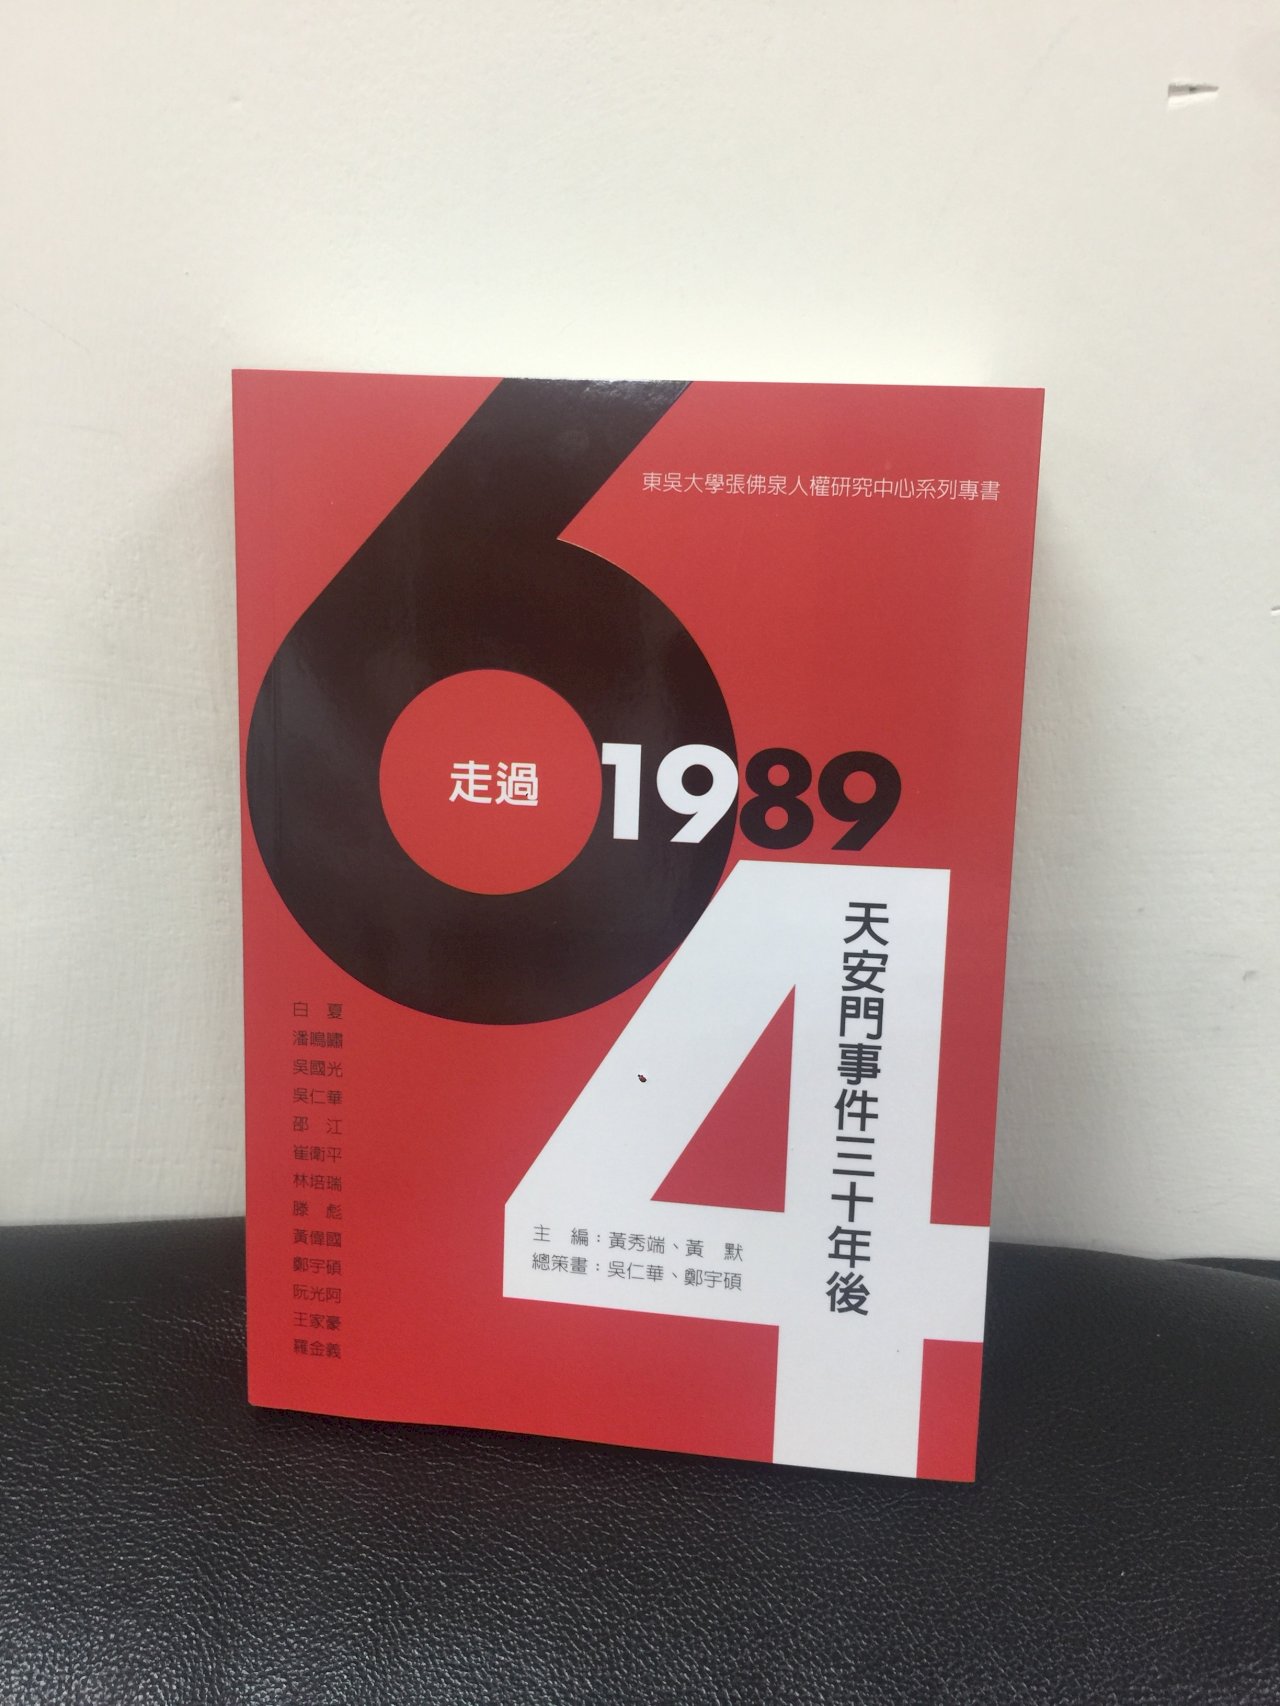 六四對台灣民主化帶來的影響